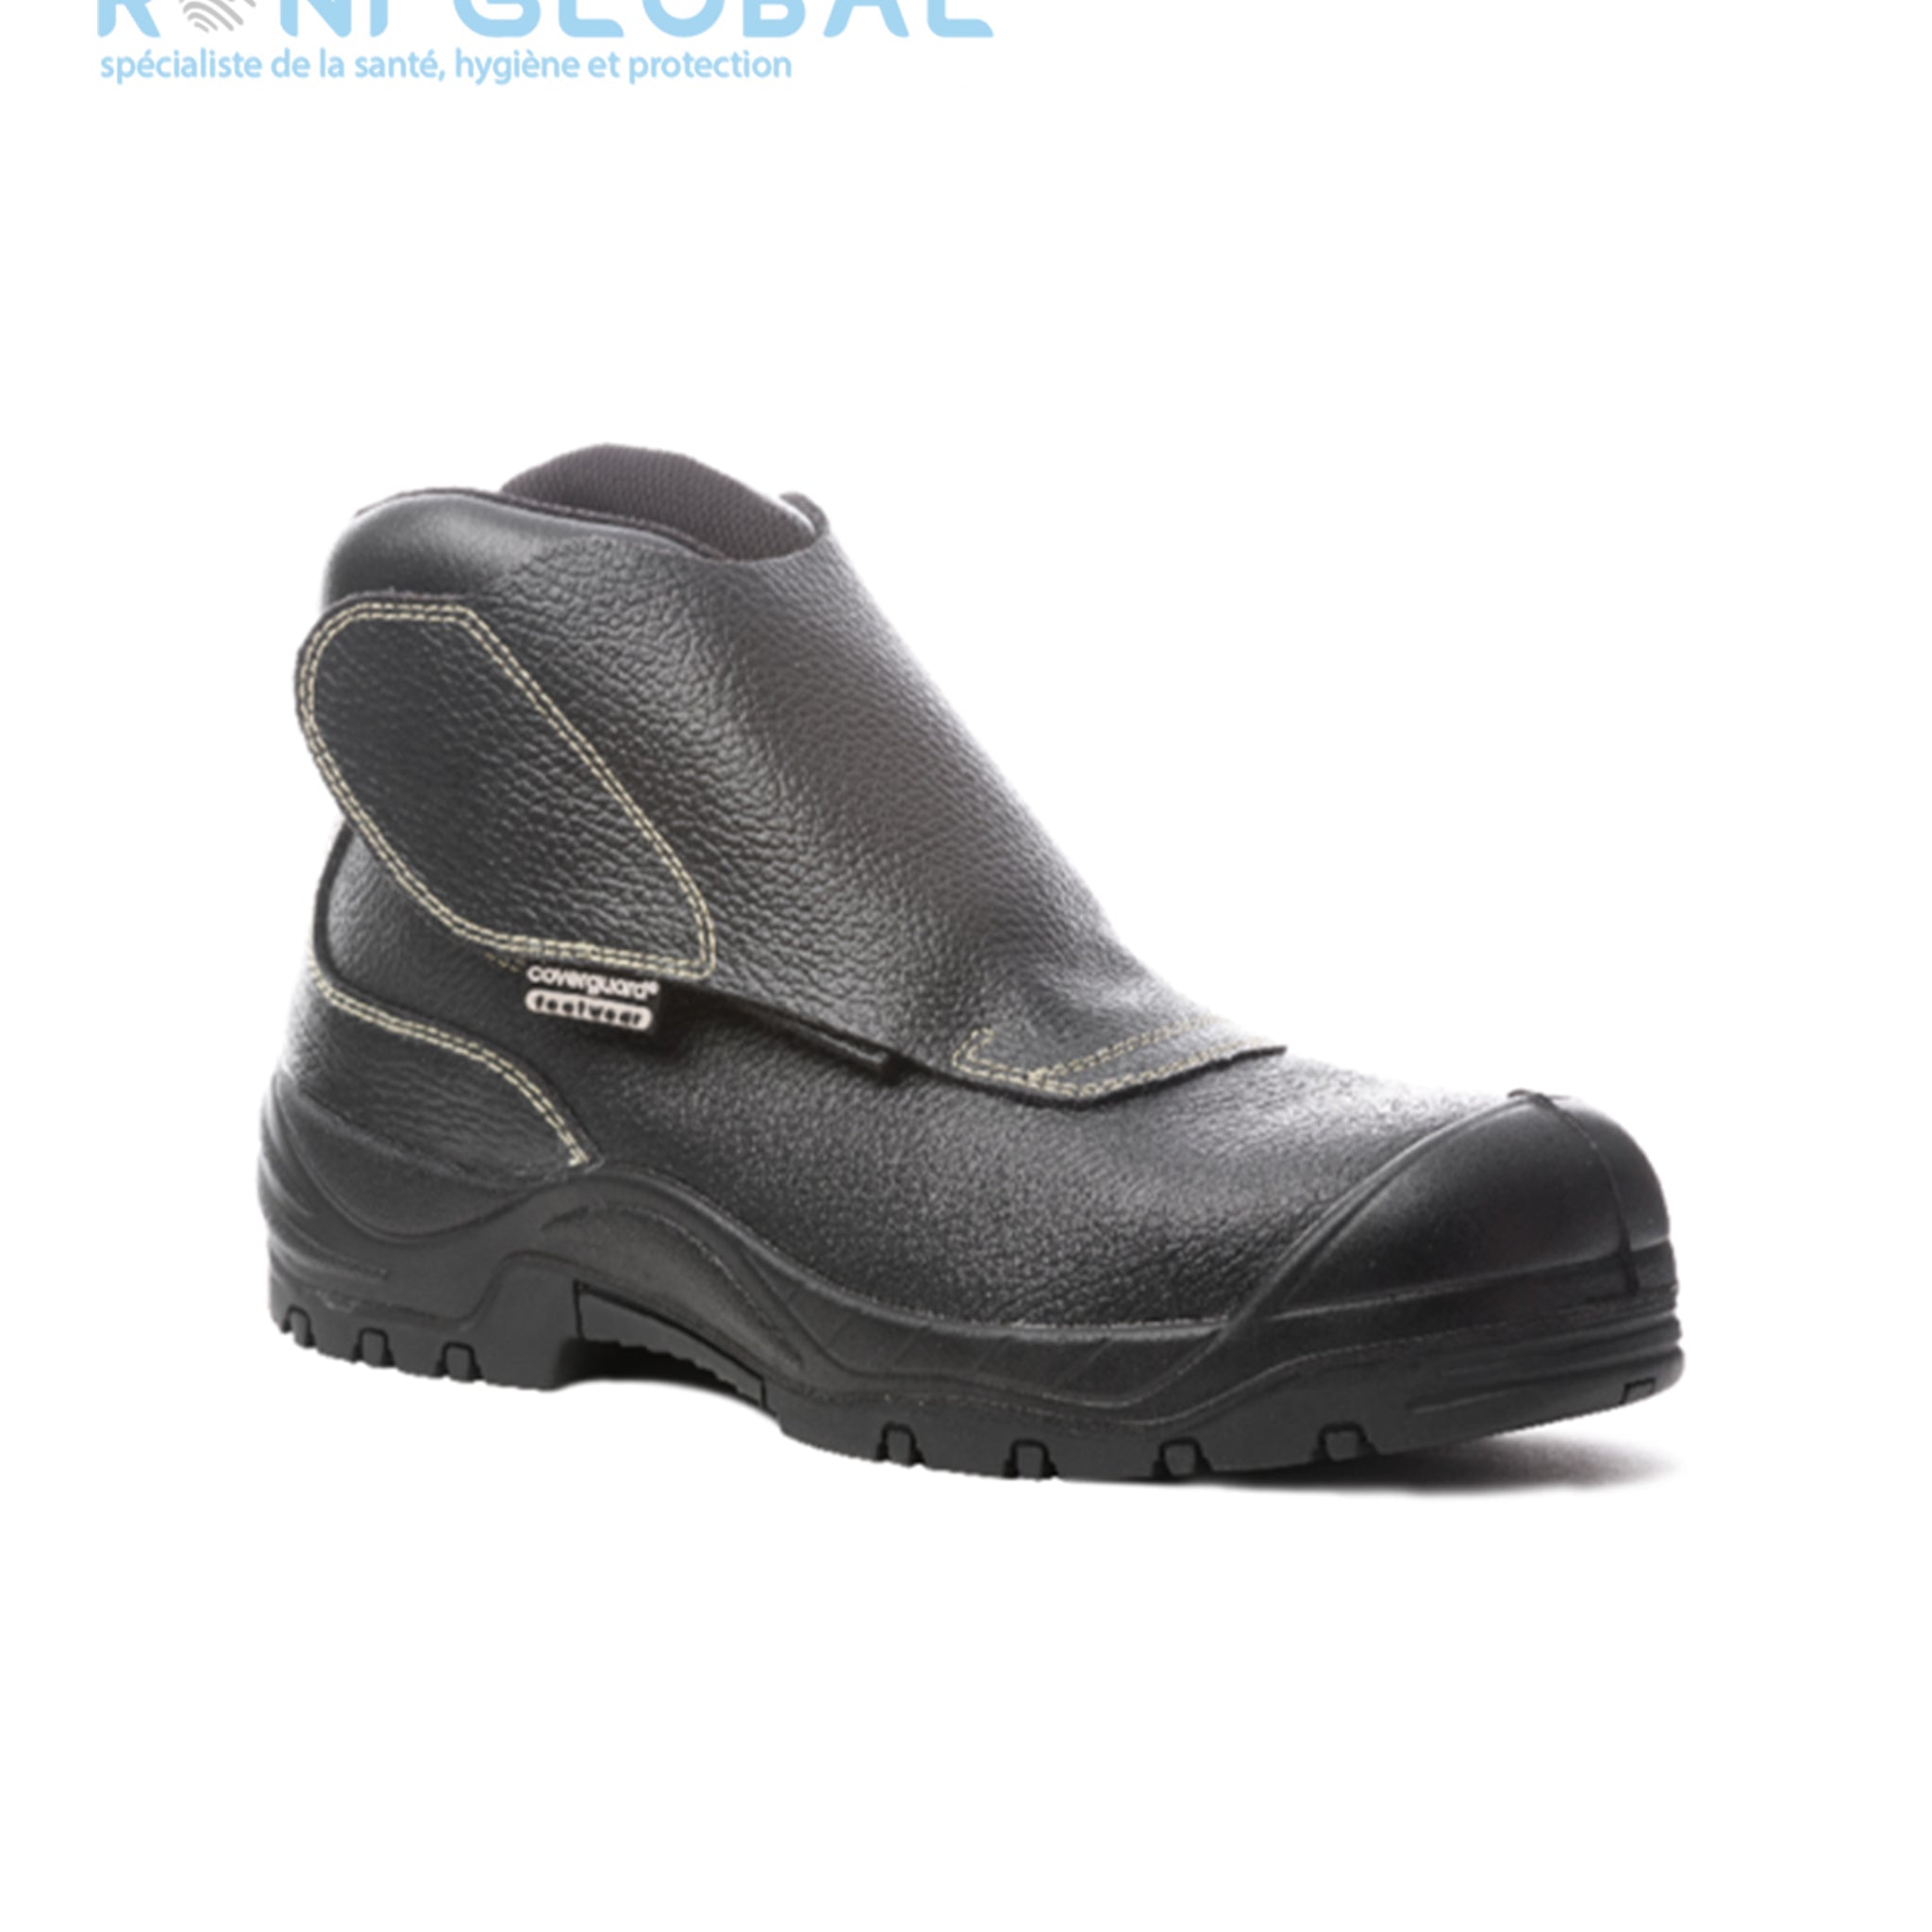 Chaussure montante de sécurité pour soudeur en cuir noire S3 HRO SRA - QUADRUFITE COVERGUARD